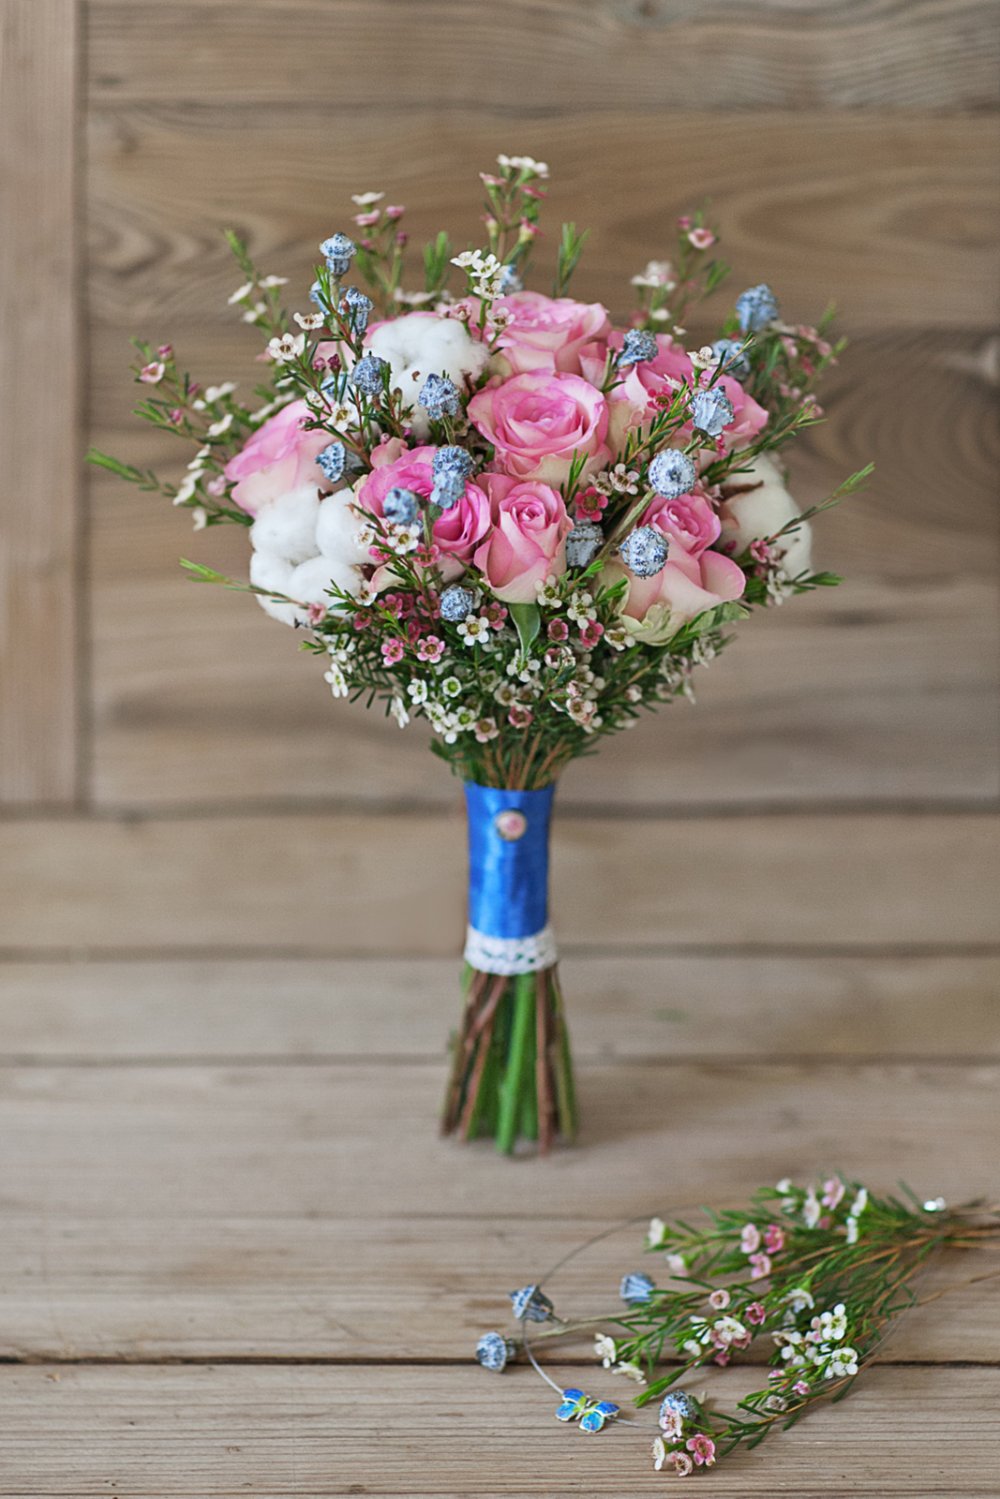 Розово-голубой свадебный букет из роз, ваксфлауэра, коробочек натурального хлопка и голубых ягод. Украшен кружевом, атласной лентой и декоративной брошью. Букет идеально подходит для зимней свадьбы, он стойкий и не боится низких температур. 